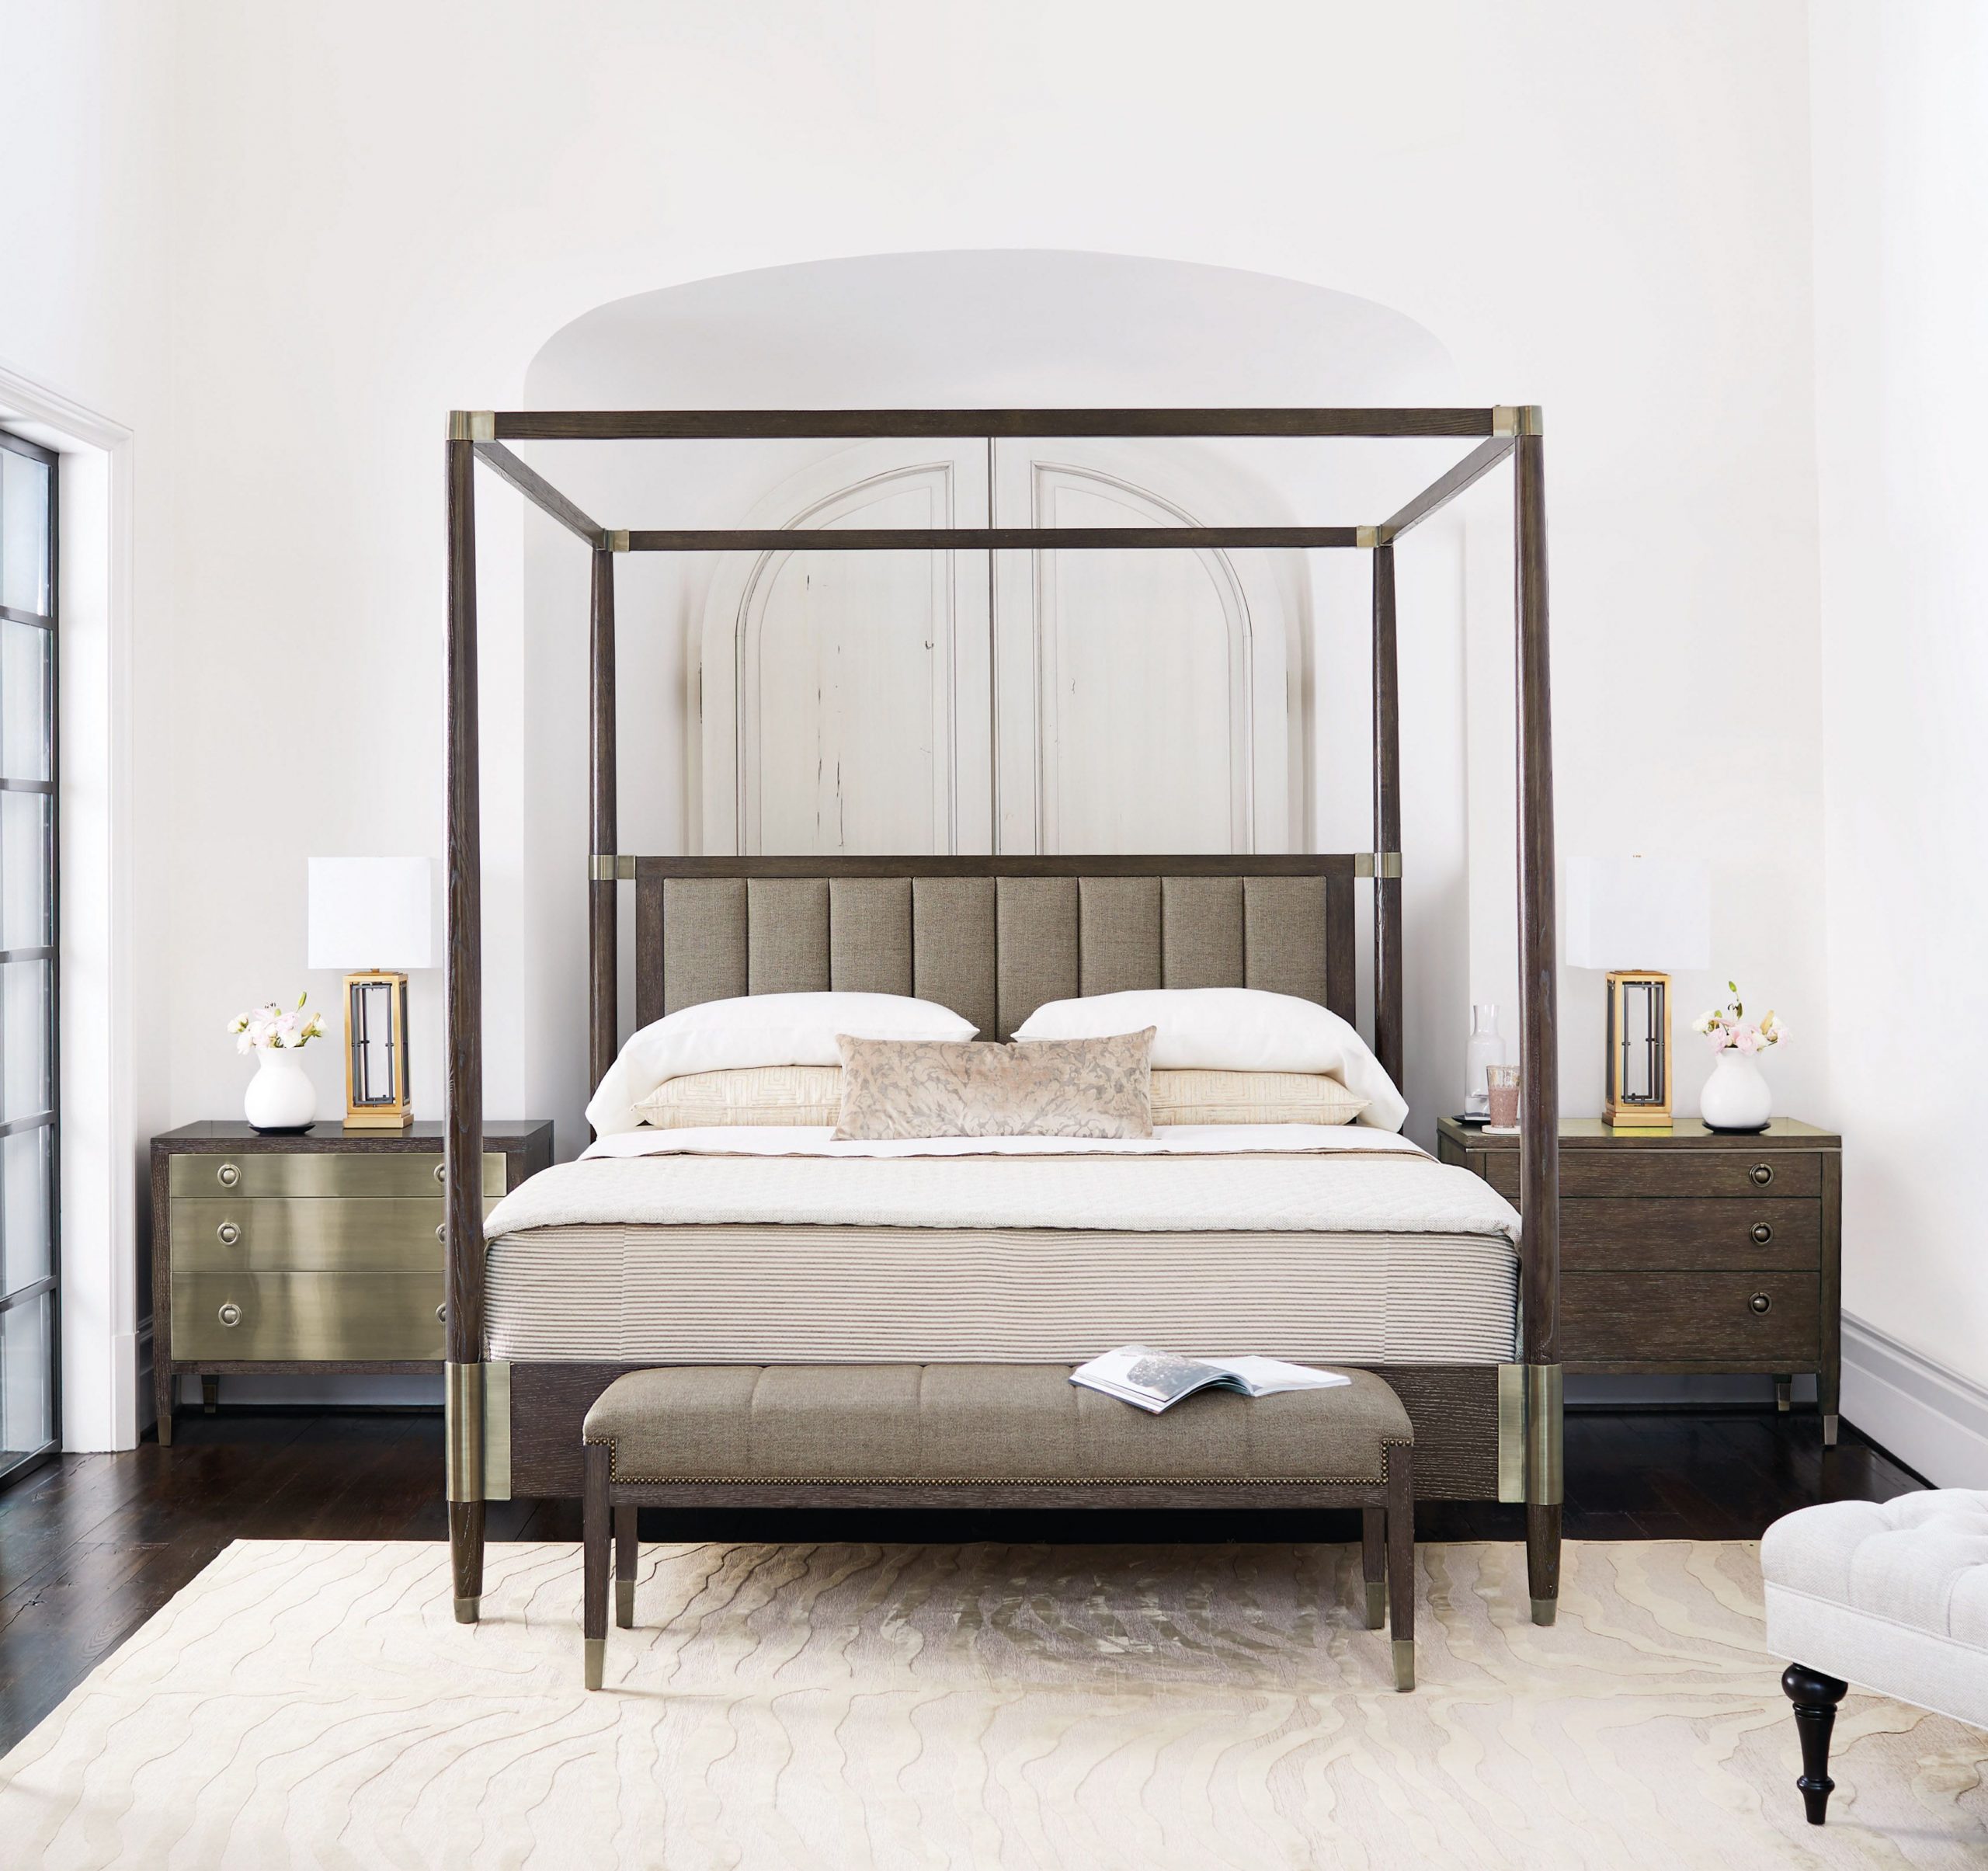 Bernhardt Bedroom Furniture